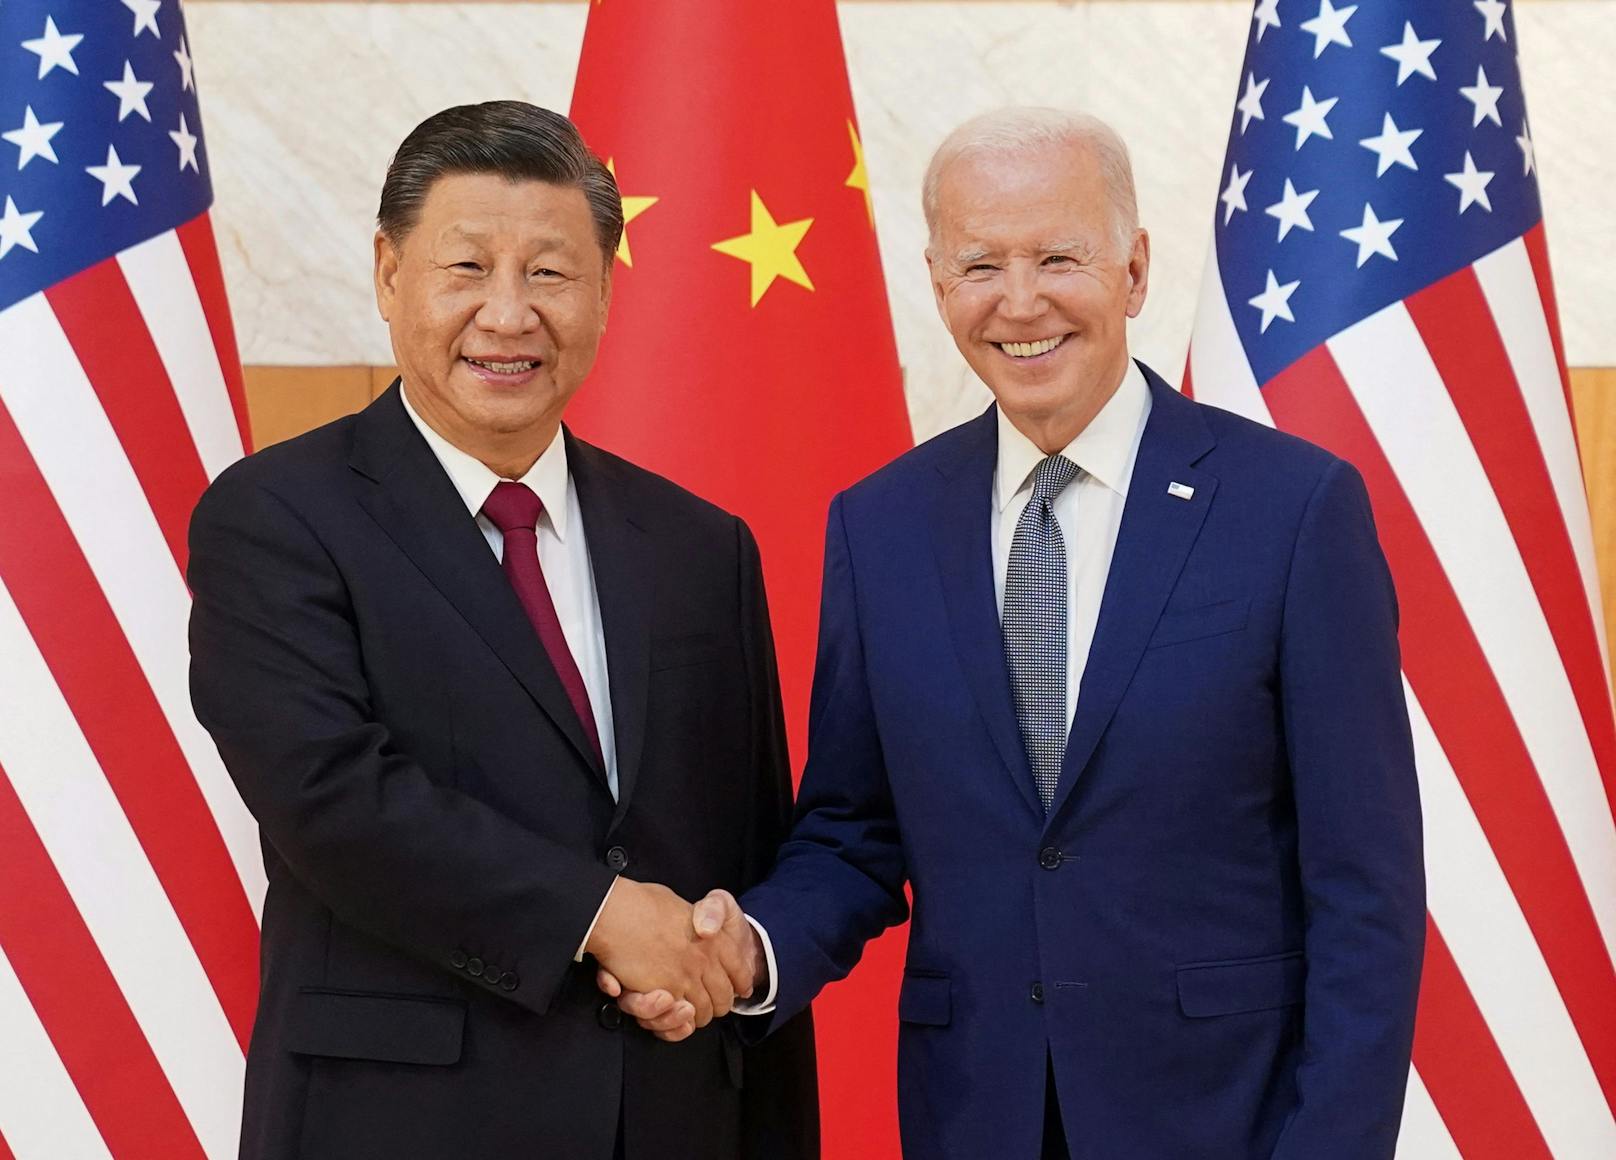 Zusammenhalt – erstes Treffen zwischen Biden und Xi